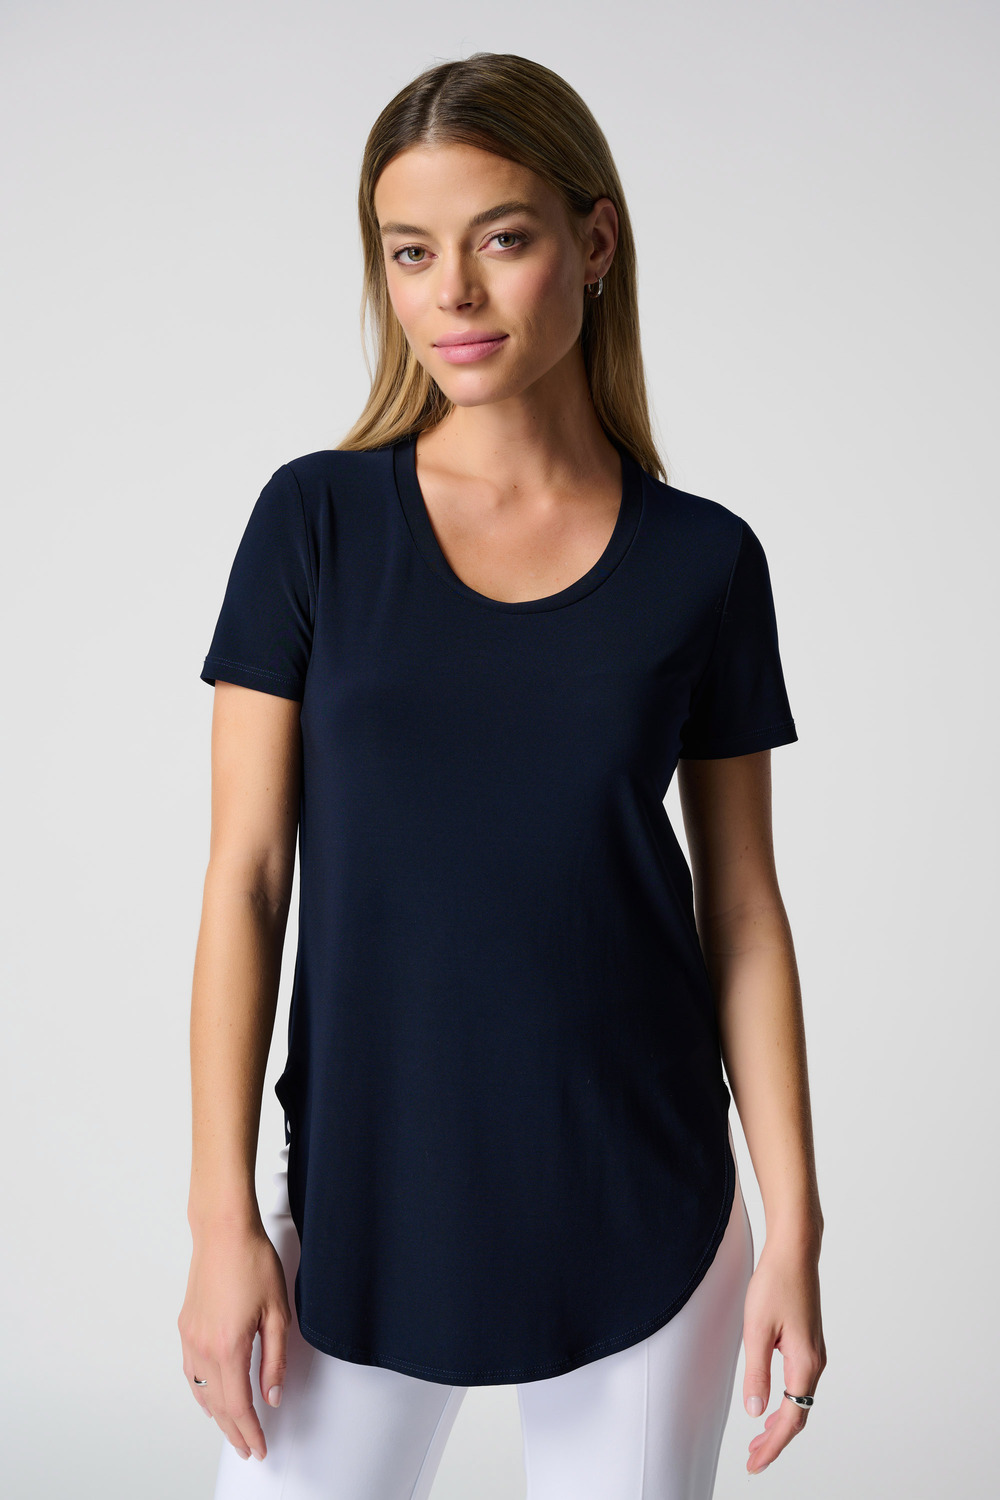 T-shirt long, bas arrondi modèle 183220S24. Bleu Minuit 40